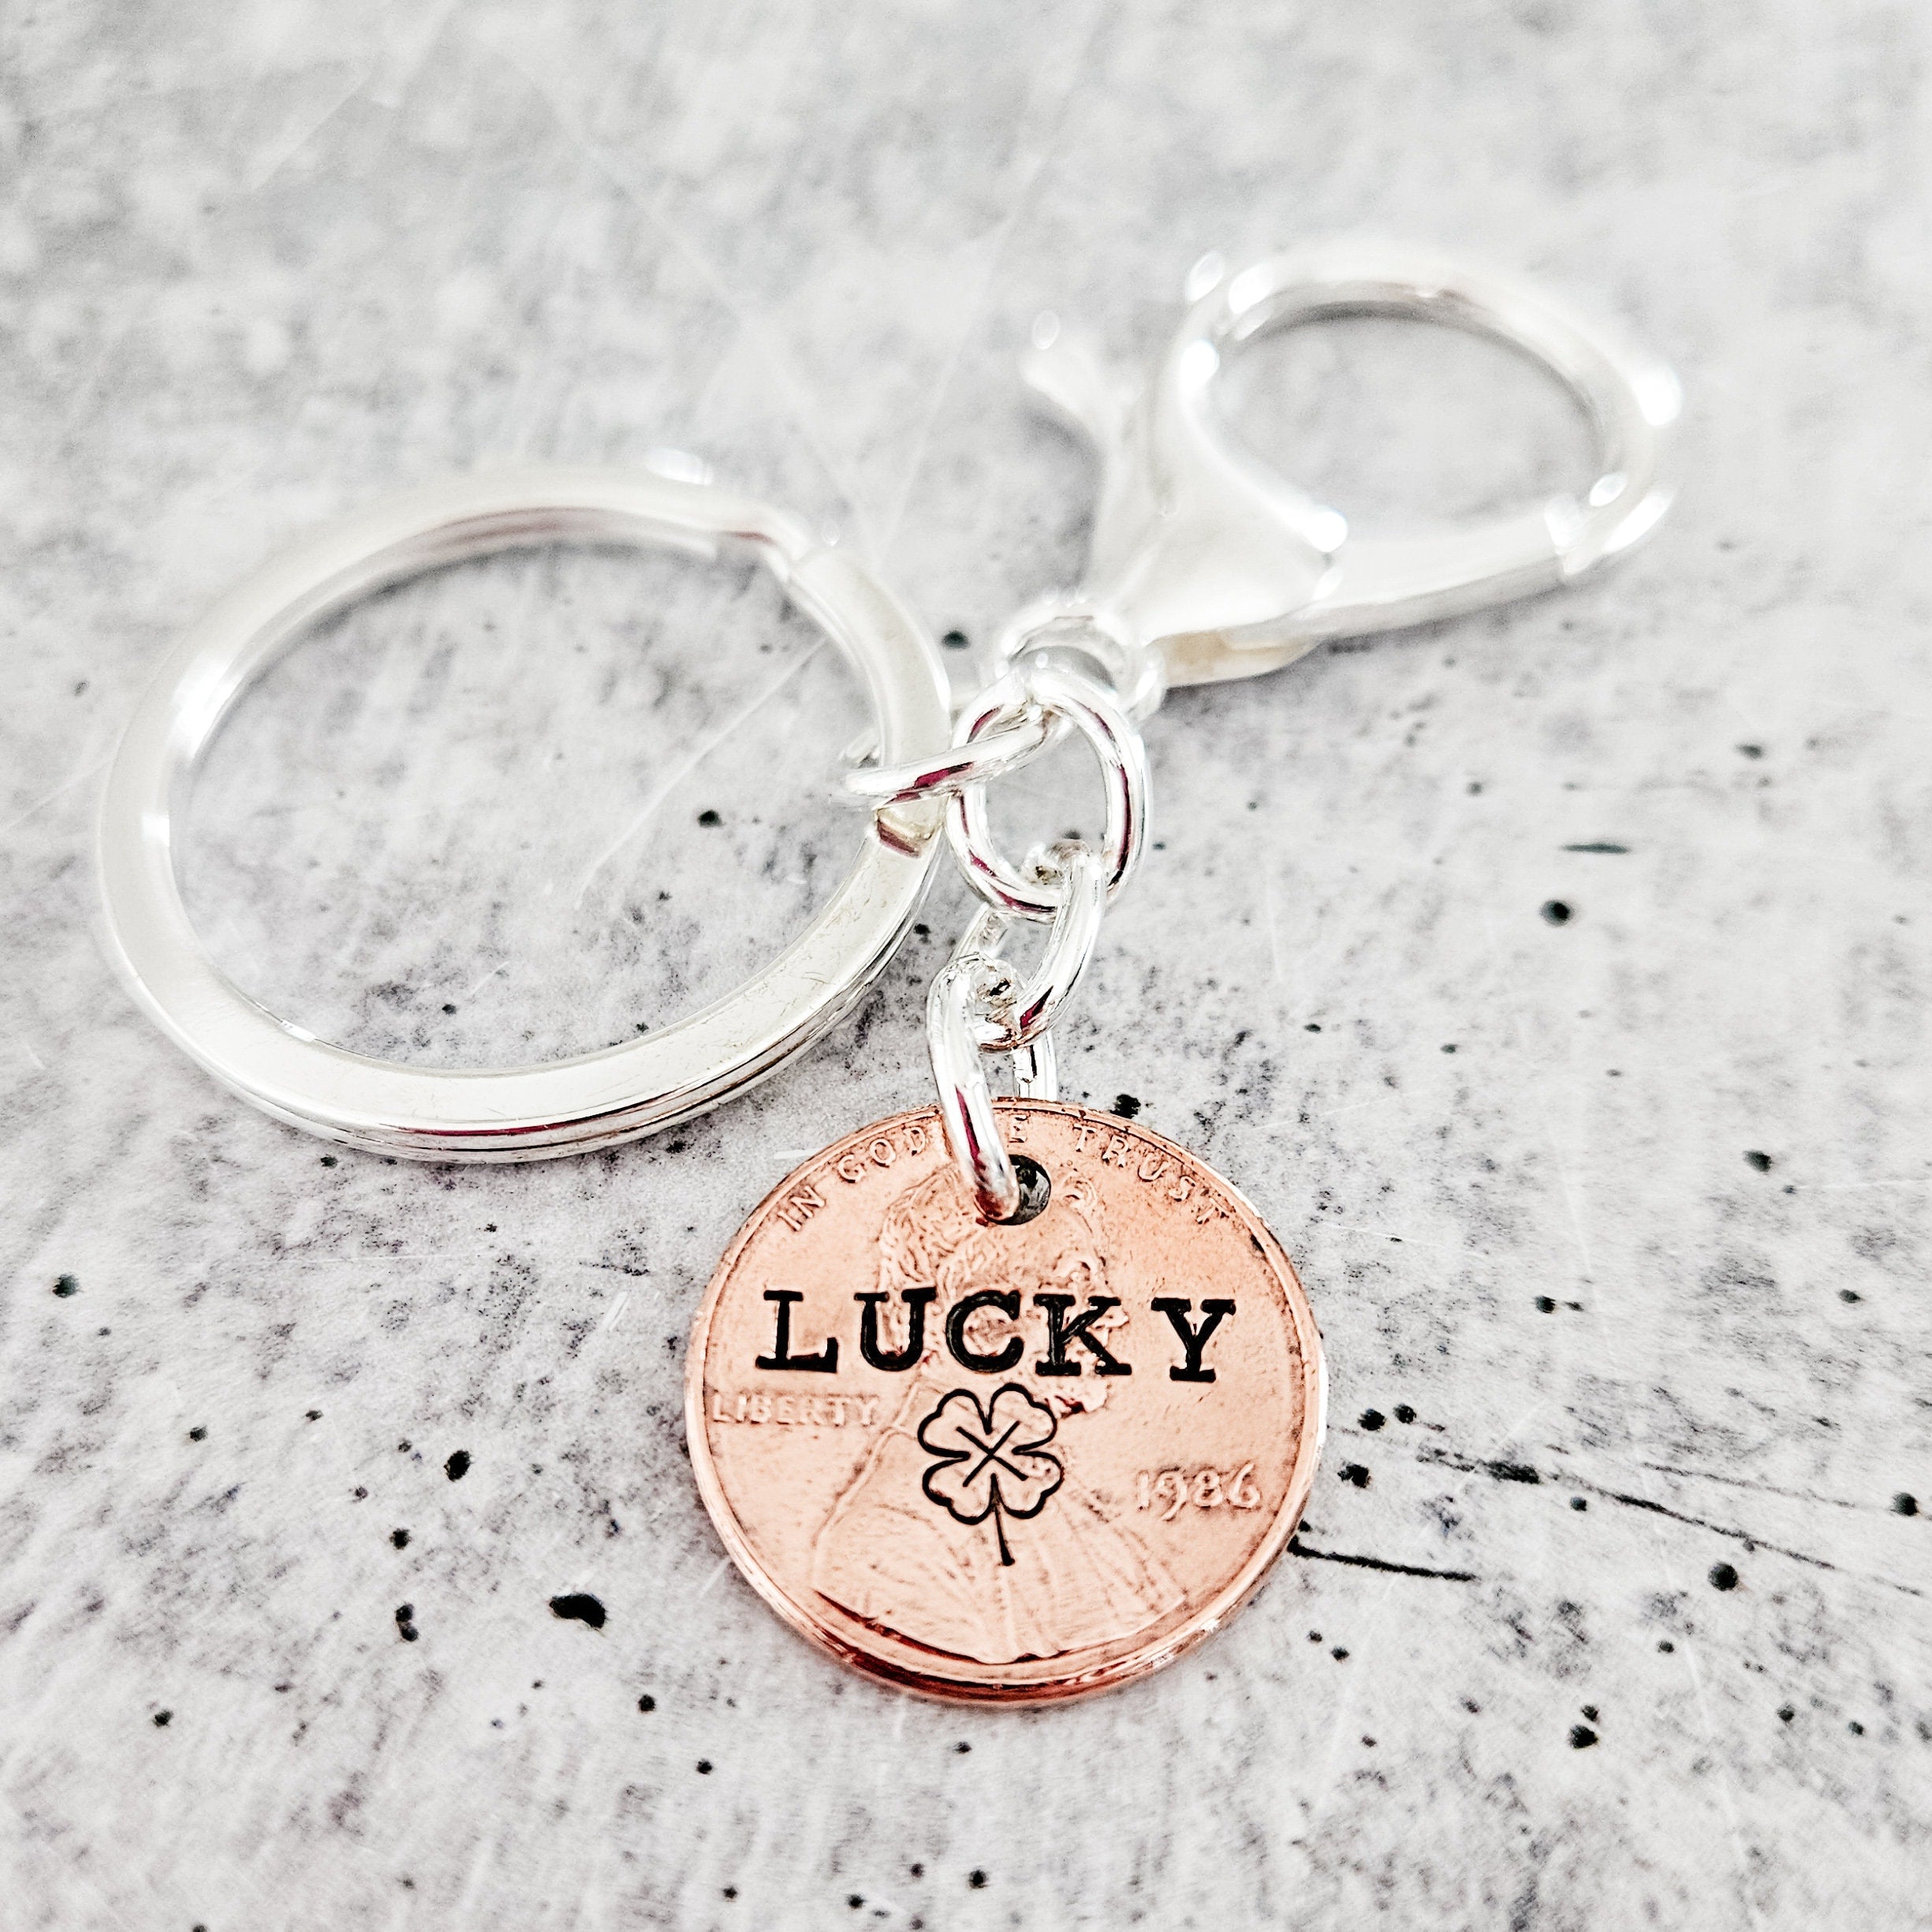 Lucky Penny Four Leaf Clover Irish Keychain - St. Patrick's Day Lucky Penny Good Luck Charm Salt and Sparkle